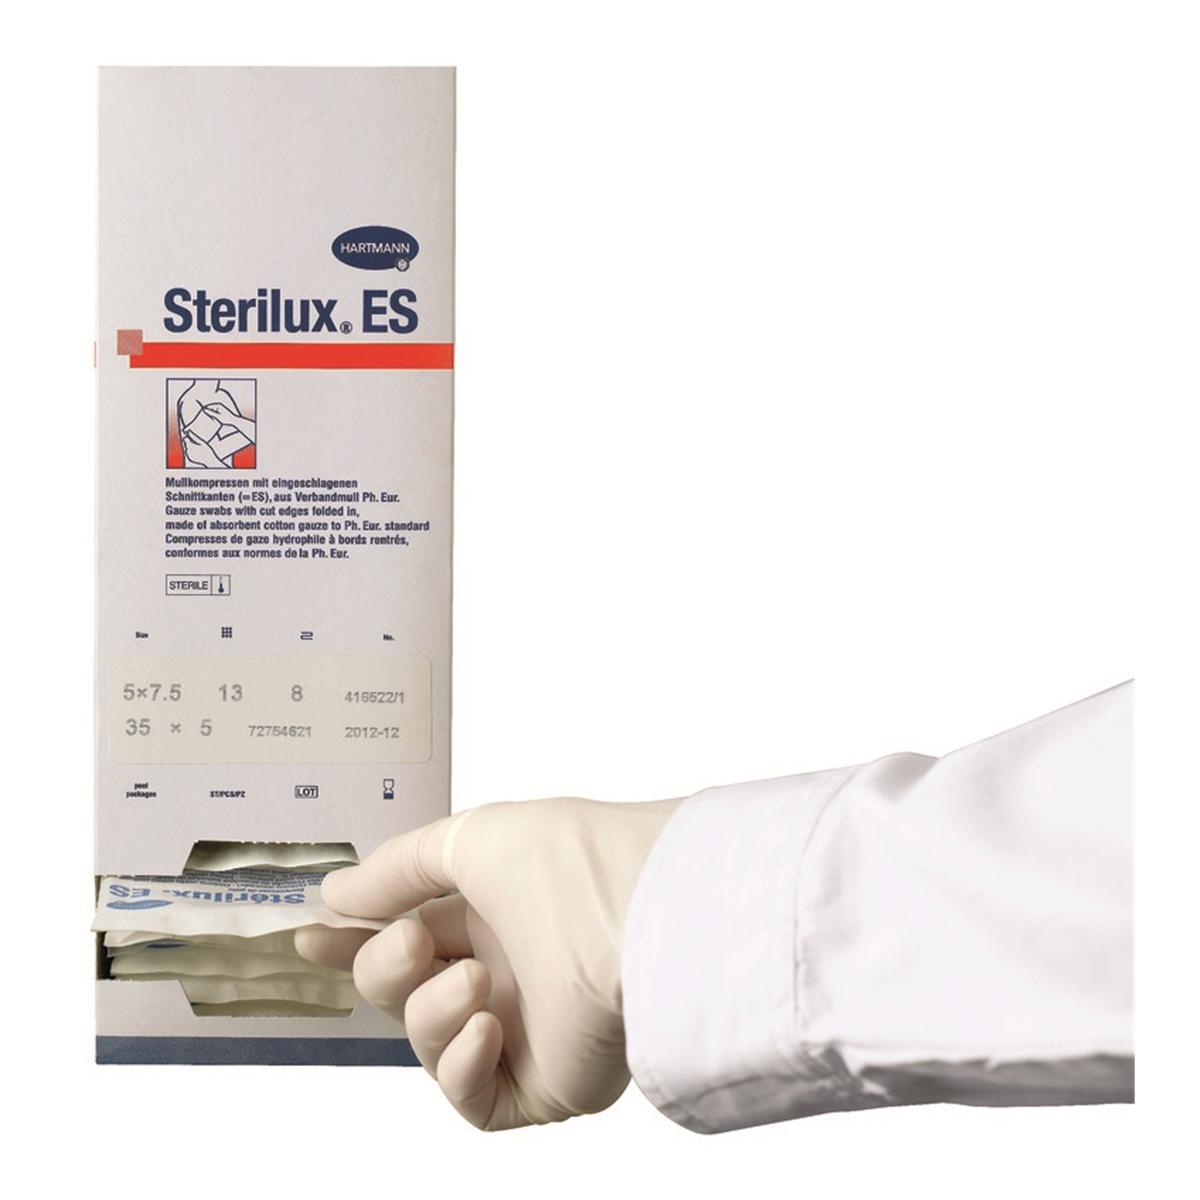 Compresses Stériles 35 pièces ⋆ Babionat %Sterilux® ES HARTMANN